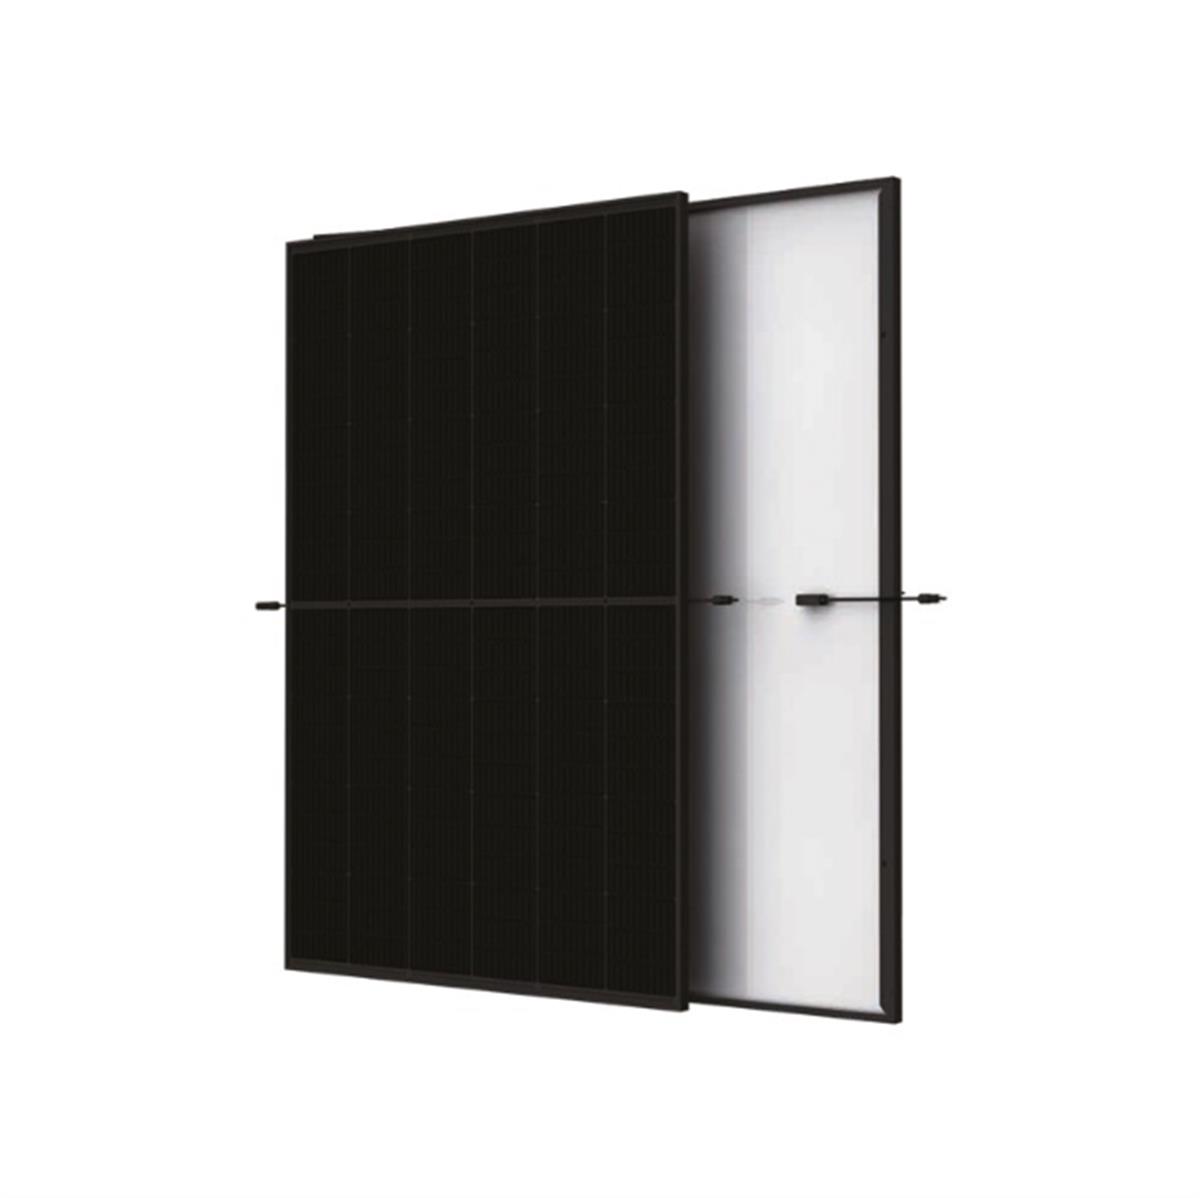 Trina solar Vertex S (R) 420 W